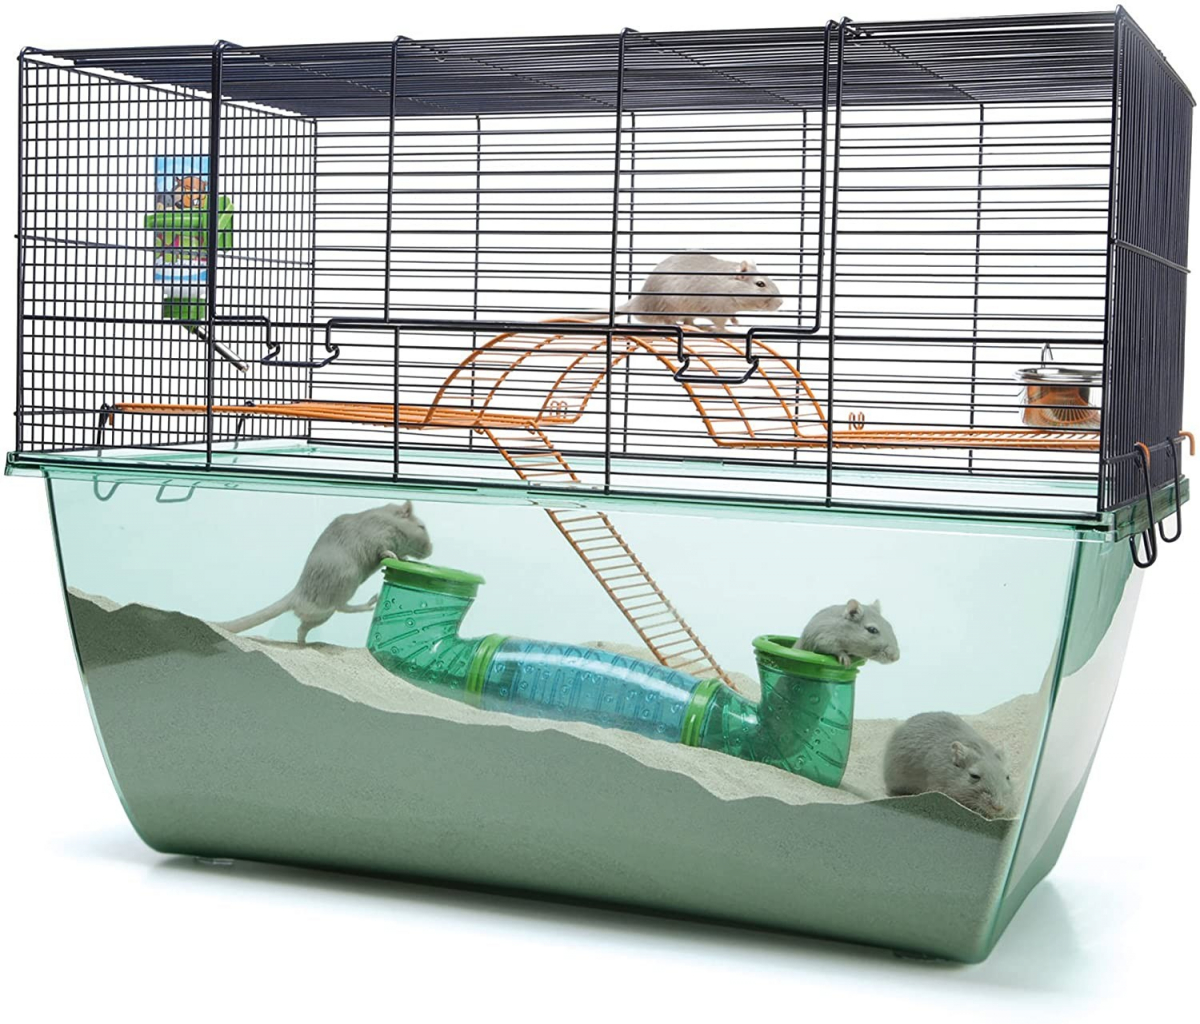 Animali Piccoli animali Habitat gabbie e accessori Roue plastique beige hamster 